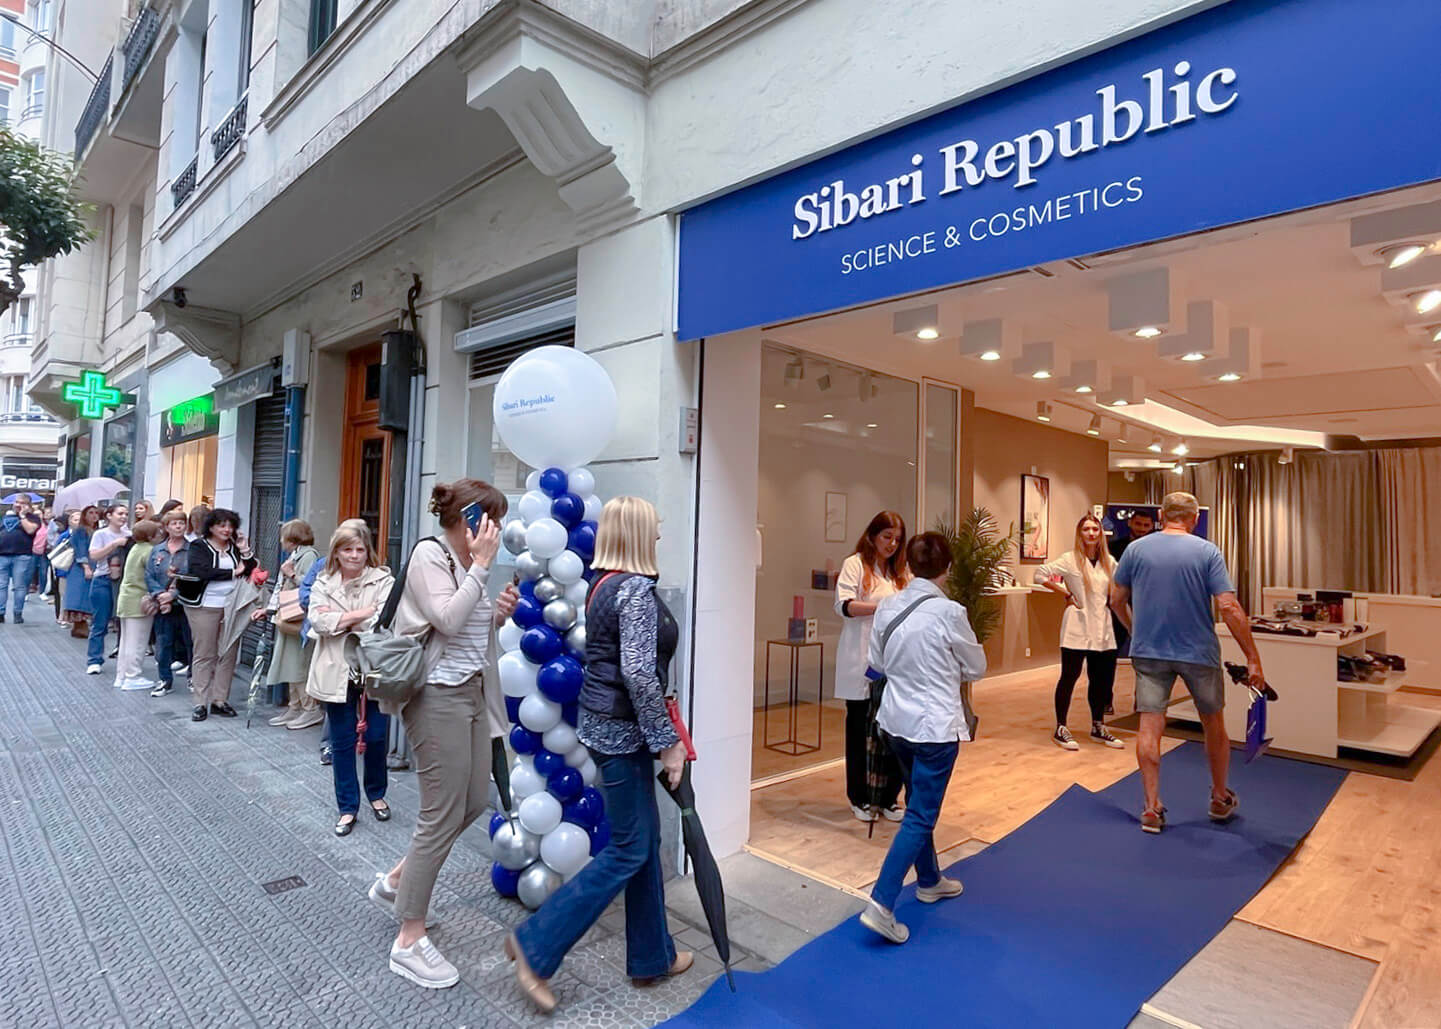 Siempre acuden muchos asistentes a los eventos de Sibari Republic en Bilbao.